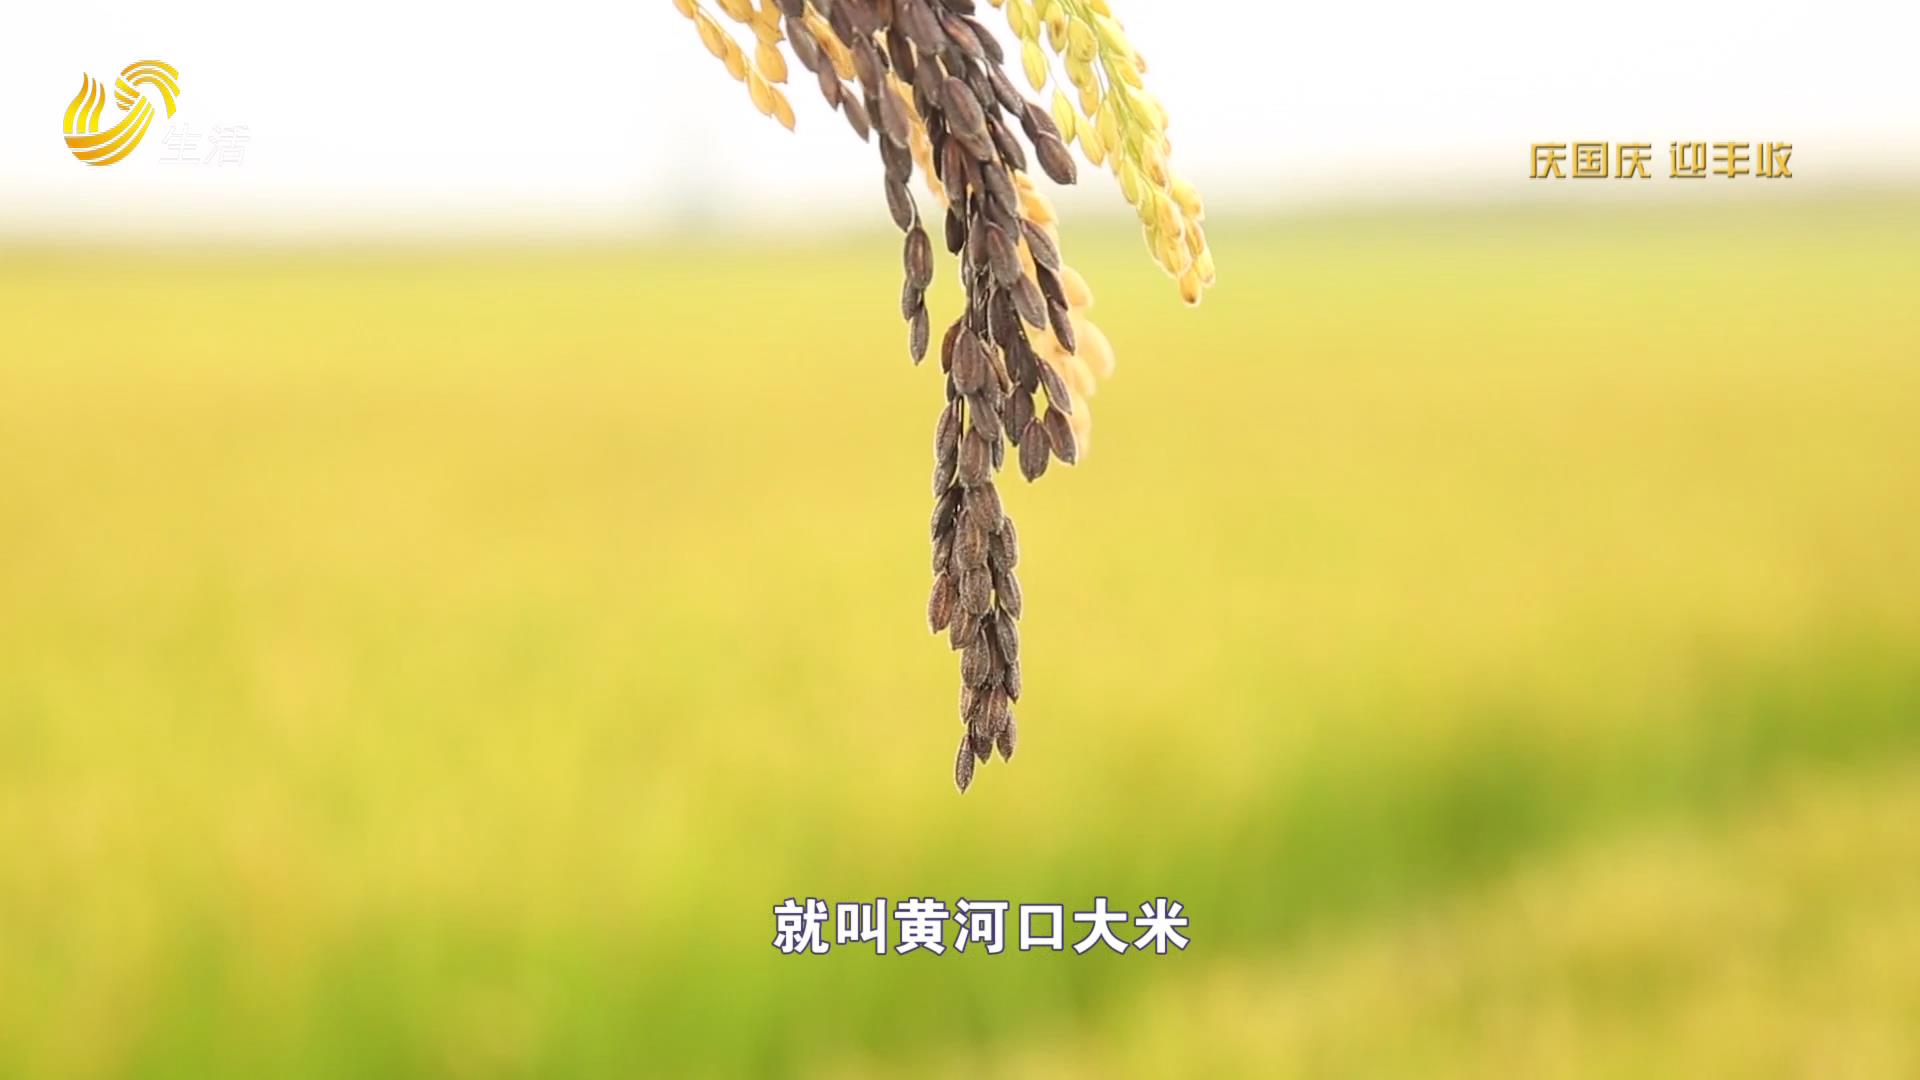 大地为纸 水稻为笔 种田也能种出创意文化